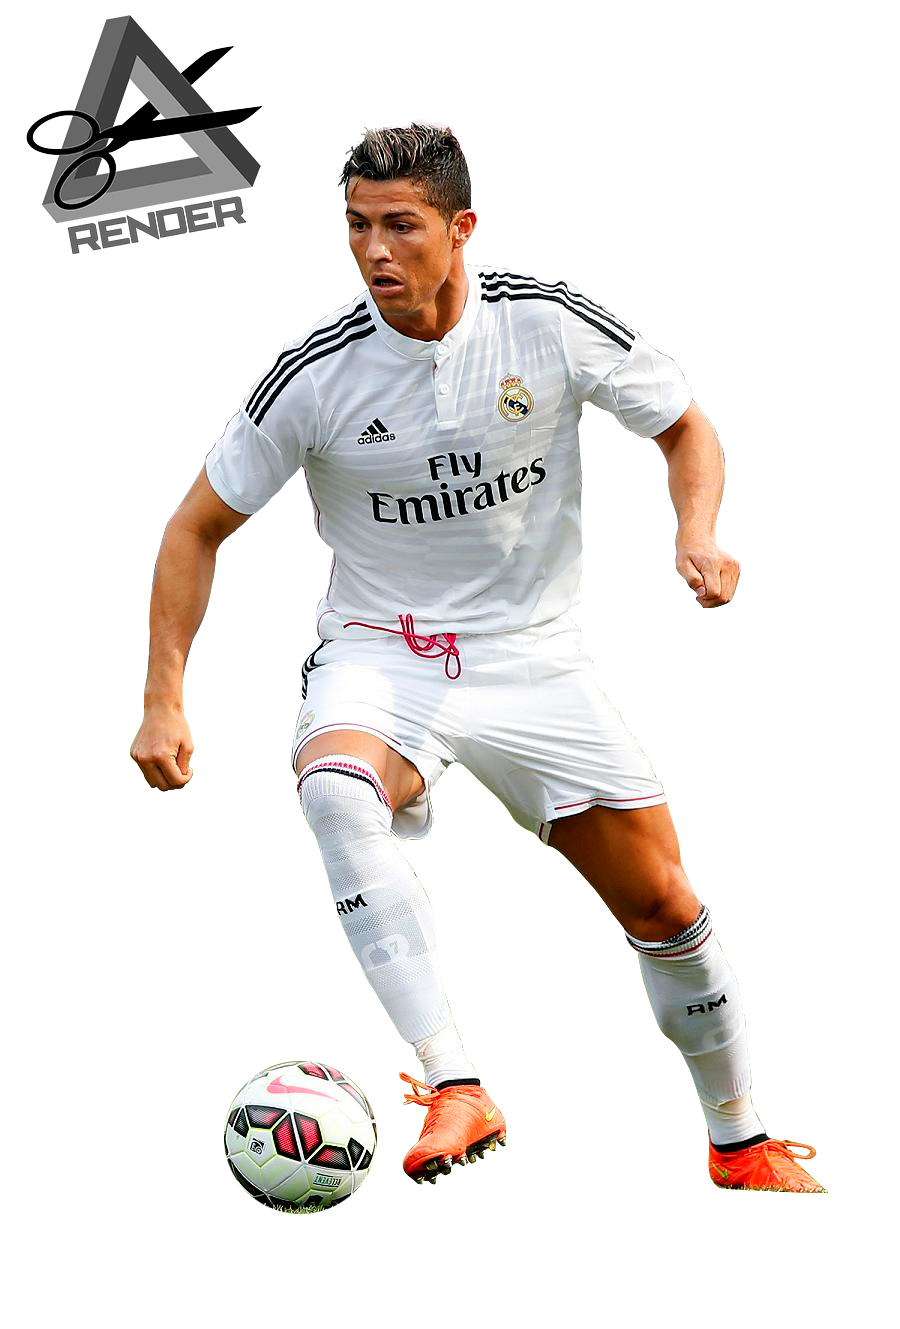 Koleksi Foto Cristiano Ronaldo Terbaru  INFORMASI MENARIK 